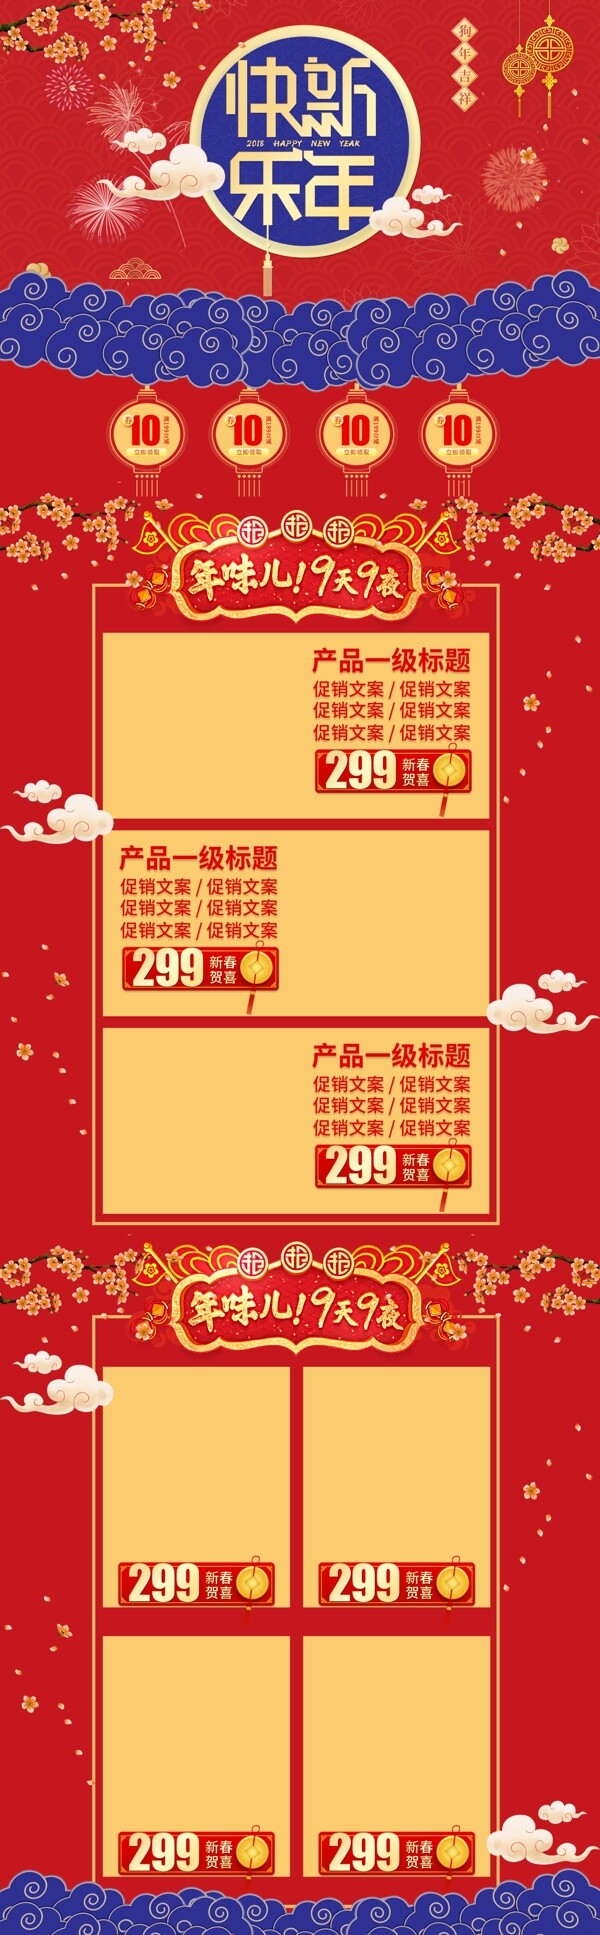 中国风红2018新年快乐春节优惠促销首页